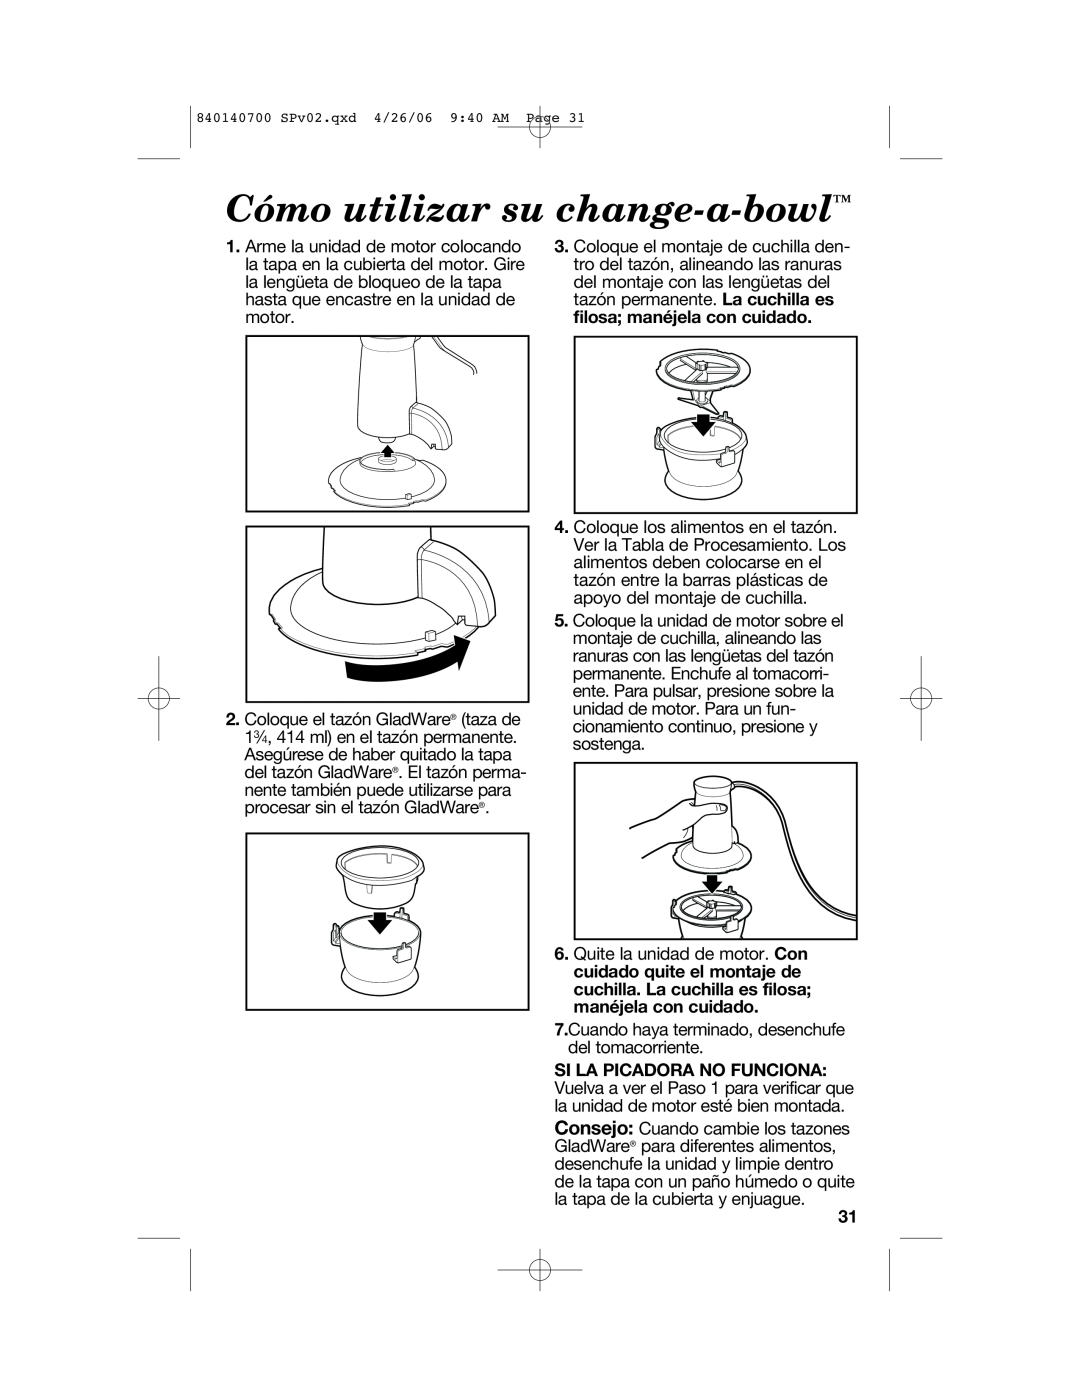 Hamilton Beach 72850 manual Cómo utilizar su change-a-bowl 